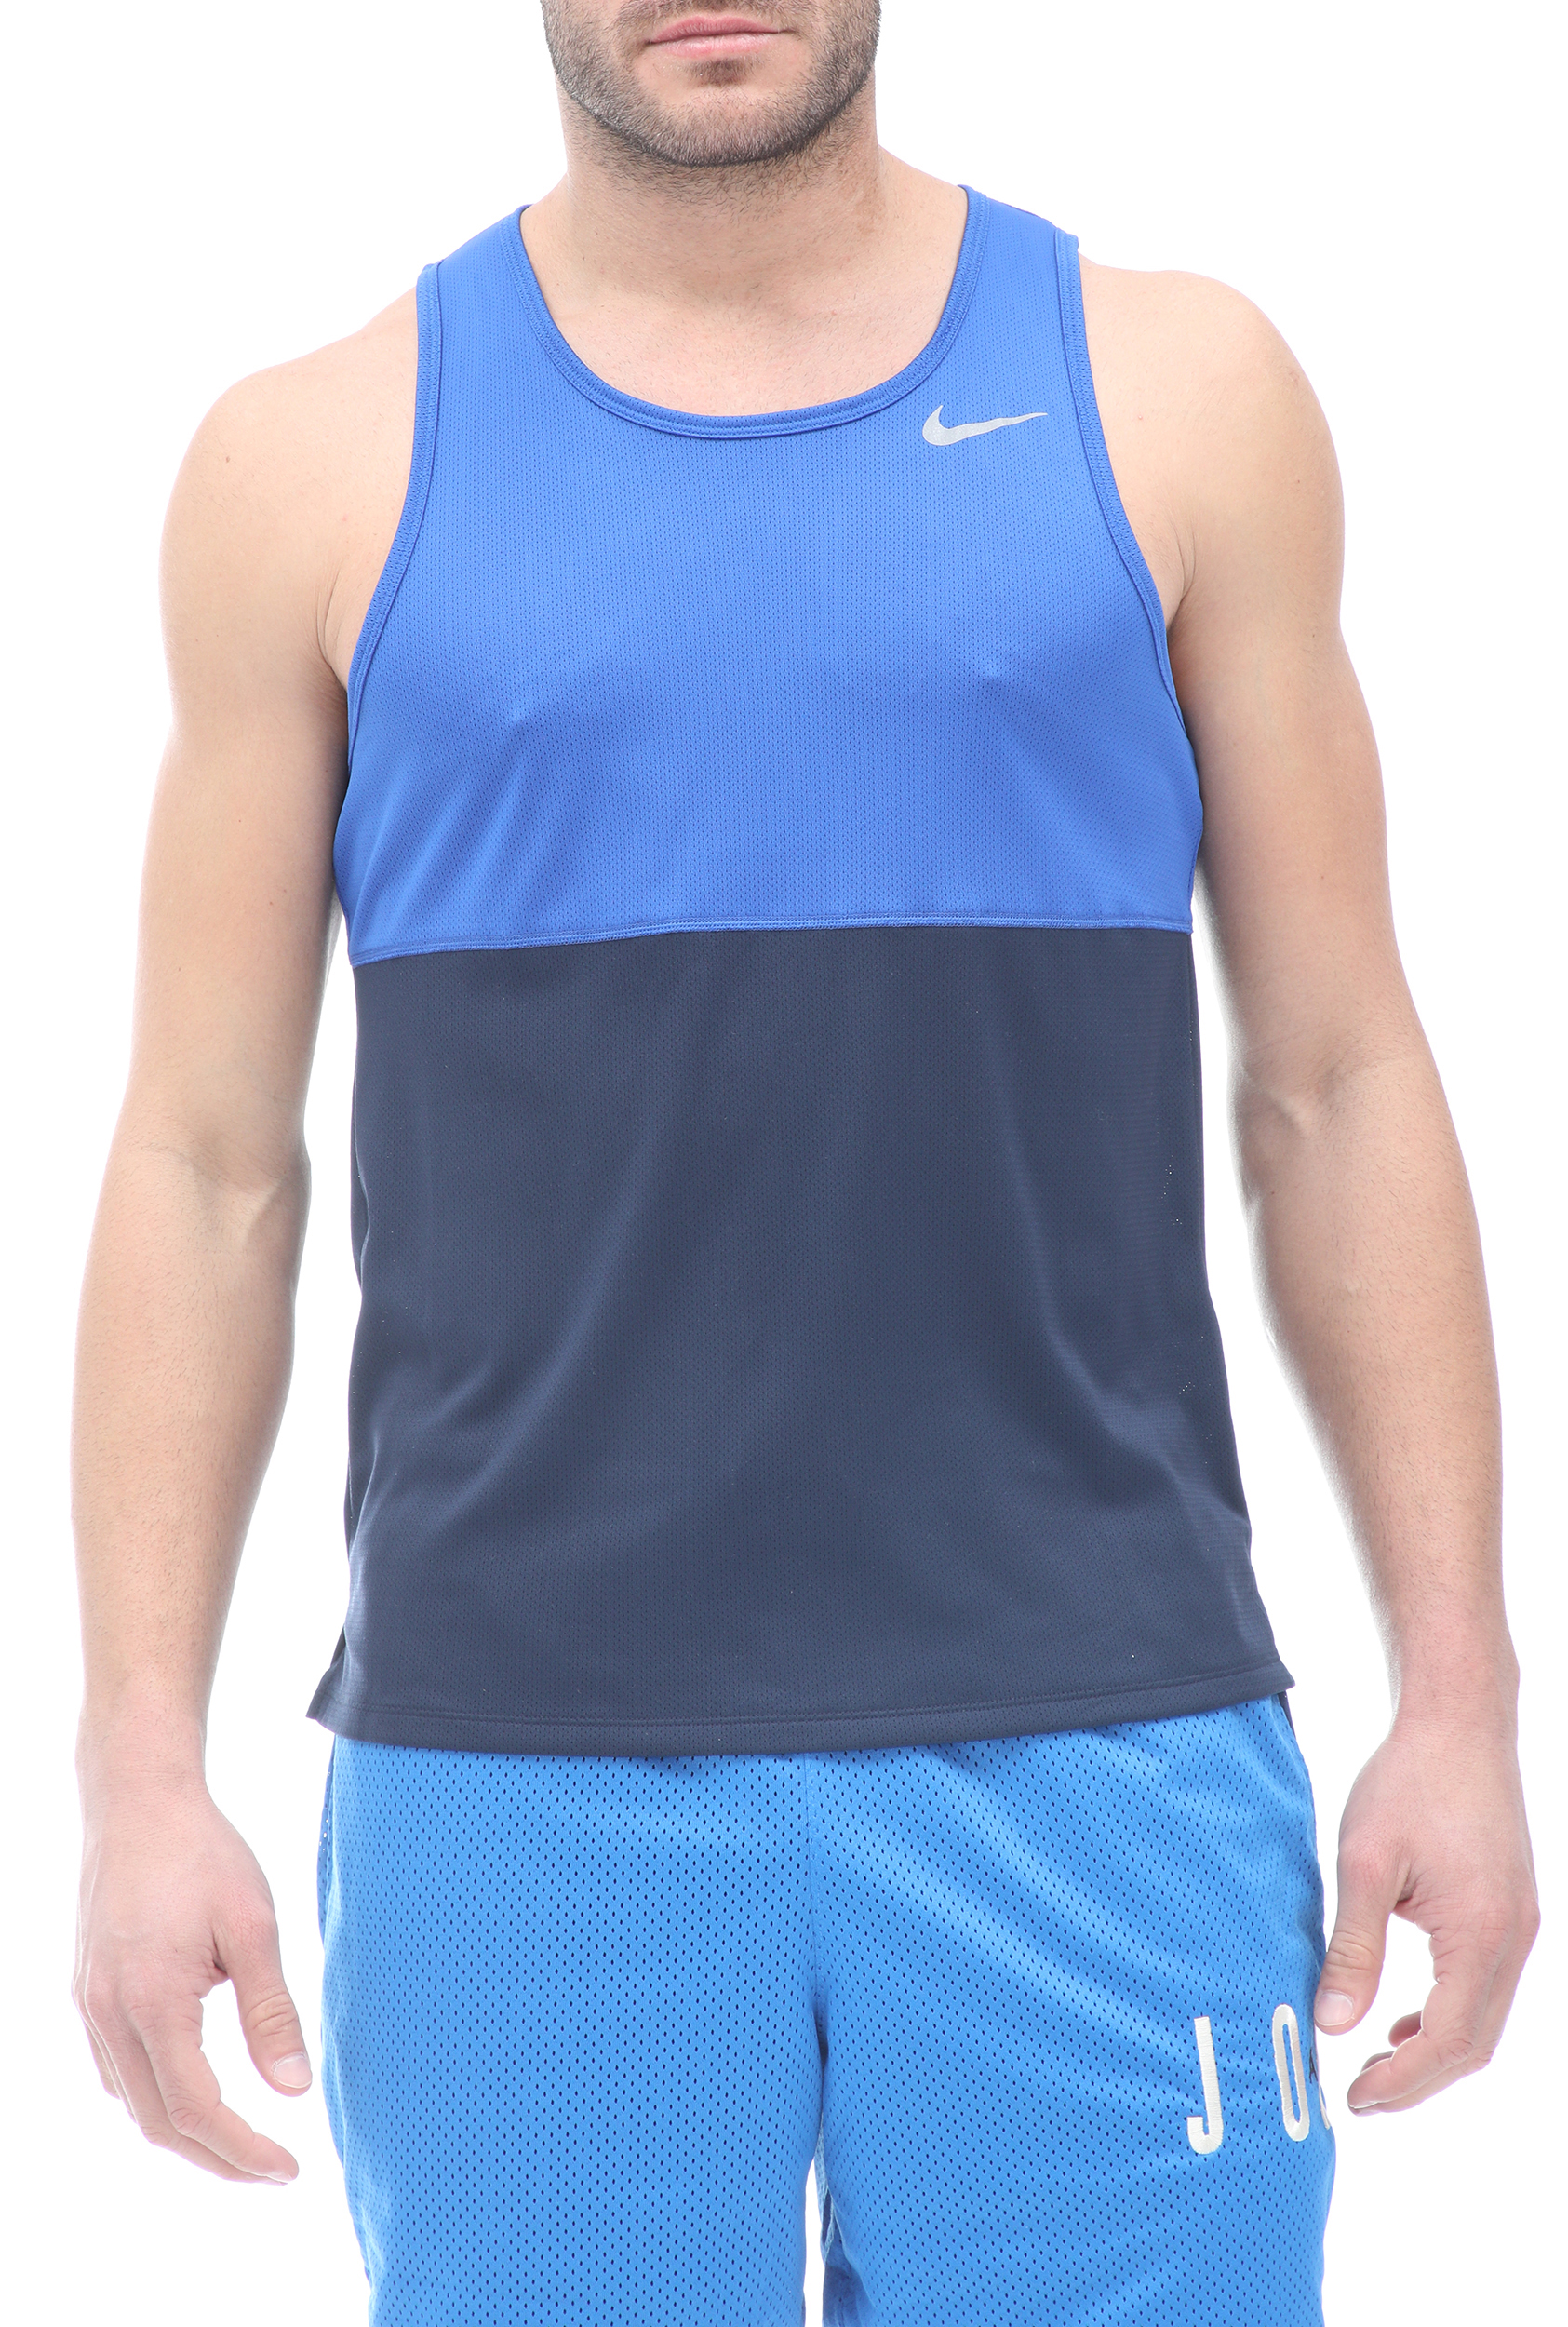 Ανδρικά/Ρούχα/Αθλητικά/T-shirt NIKE - Ανδρική μπλούζα NIKE DF RUN TANK μπλε